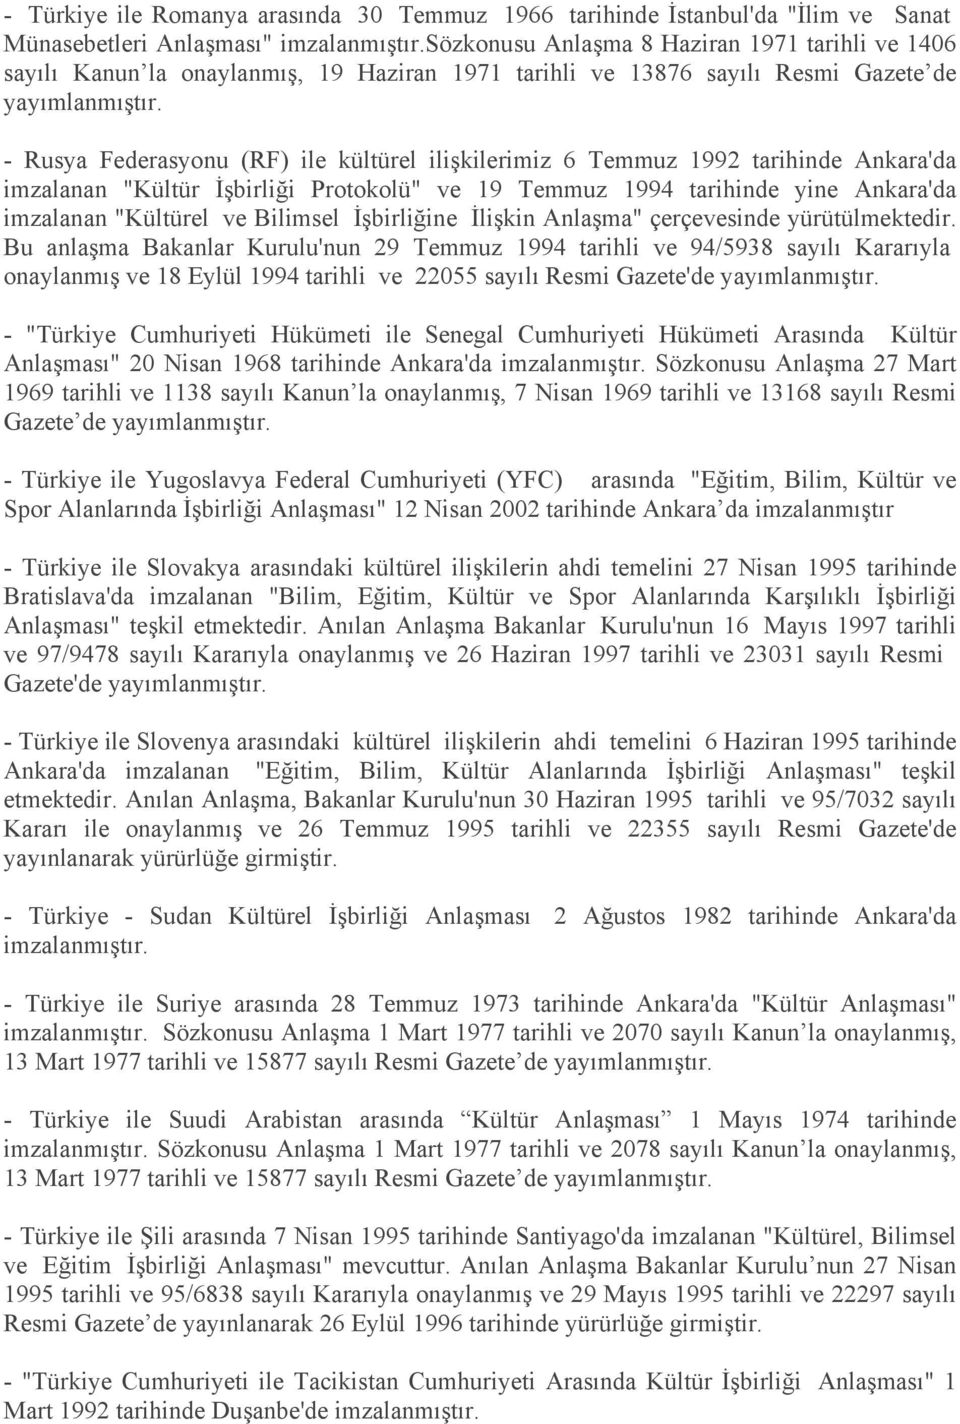 - Rusya Federasyonu (RF) ile kültürel ilişkilerimiz 6 Temmuz 1992 tarihinde Ankara'da imzalanan "Kültür İşbirliği Protokolü" ve 19 Temmuz 1994 tarihinde yine Ankara'da imzalanan "Kültürel ve Bilimsel